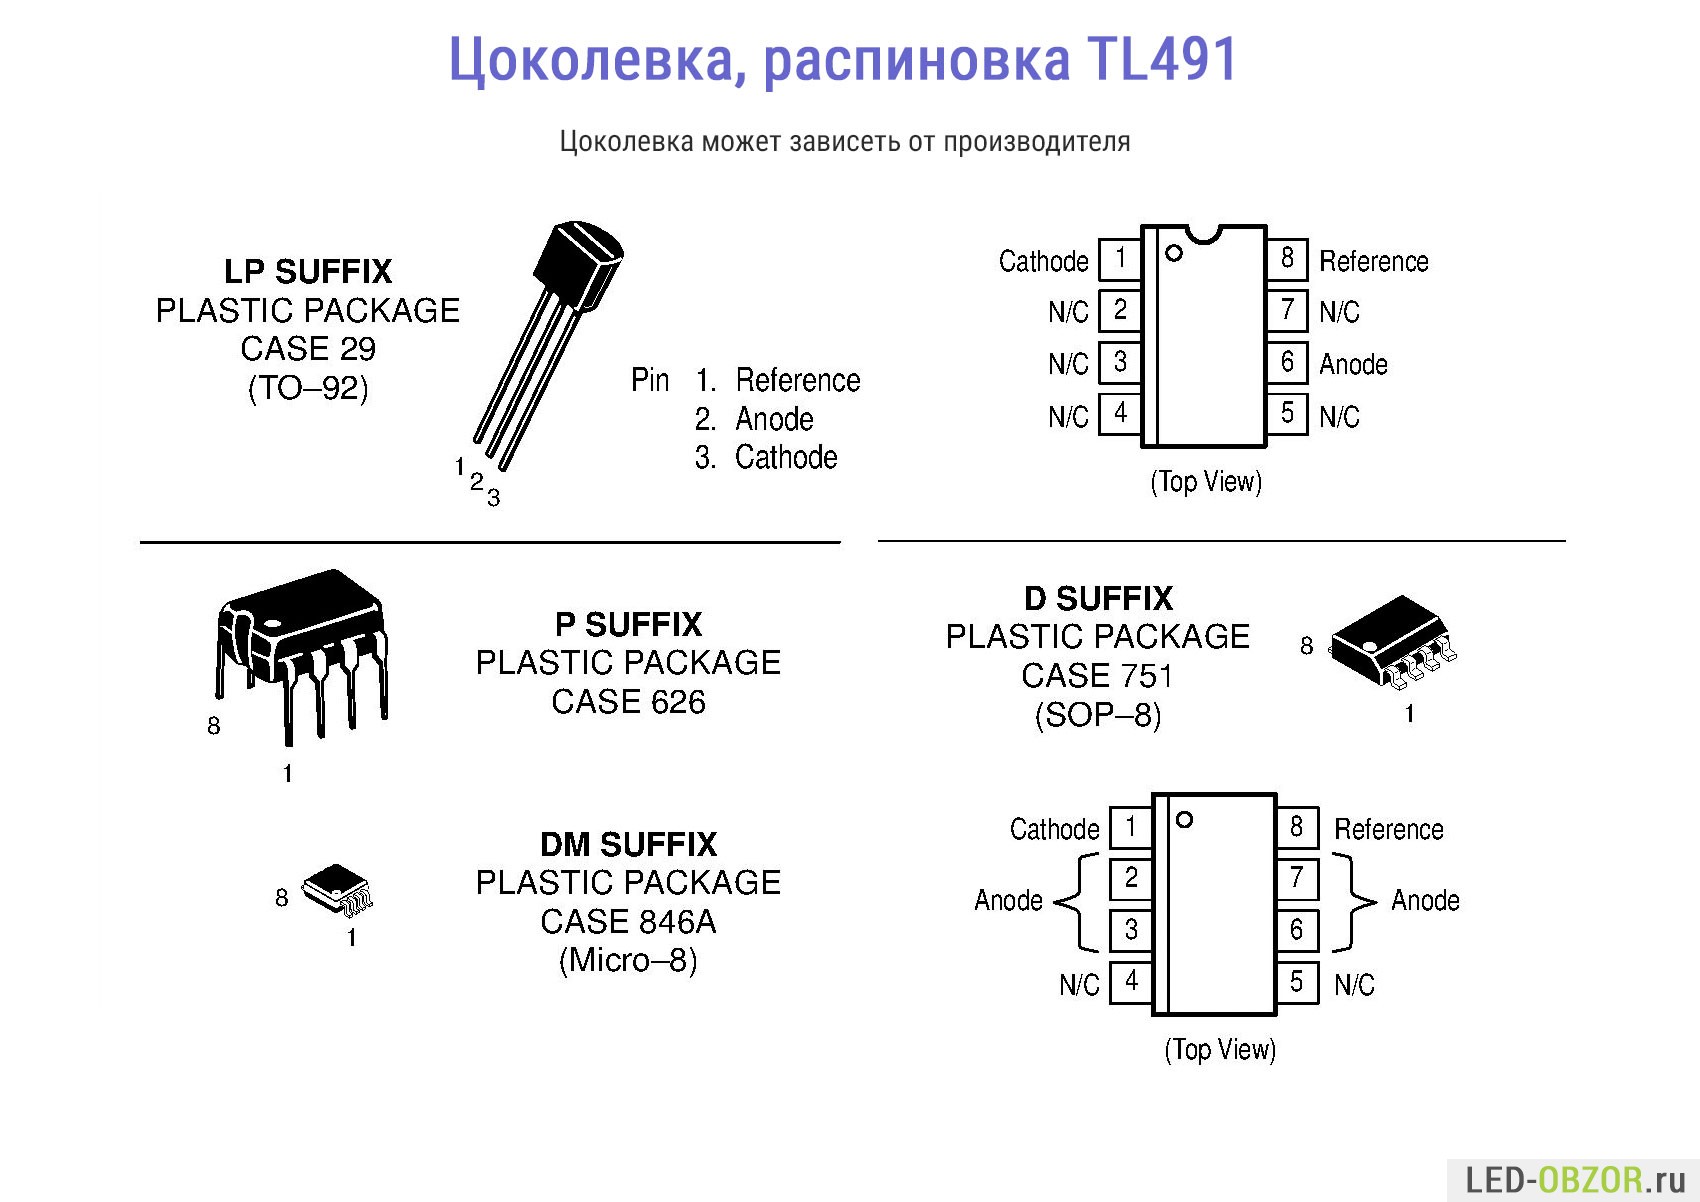 Основные технические характеристики транзистора tip127, его отечественные аналоги, цоколевка, DataSheet, примеры использования, производители